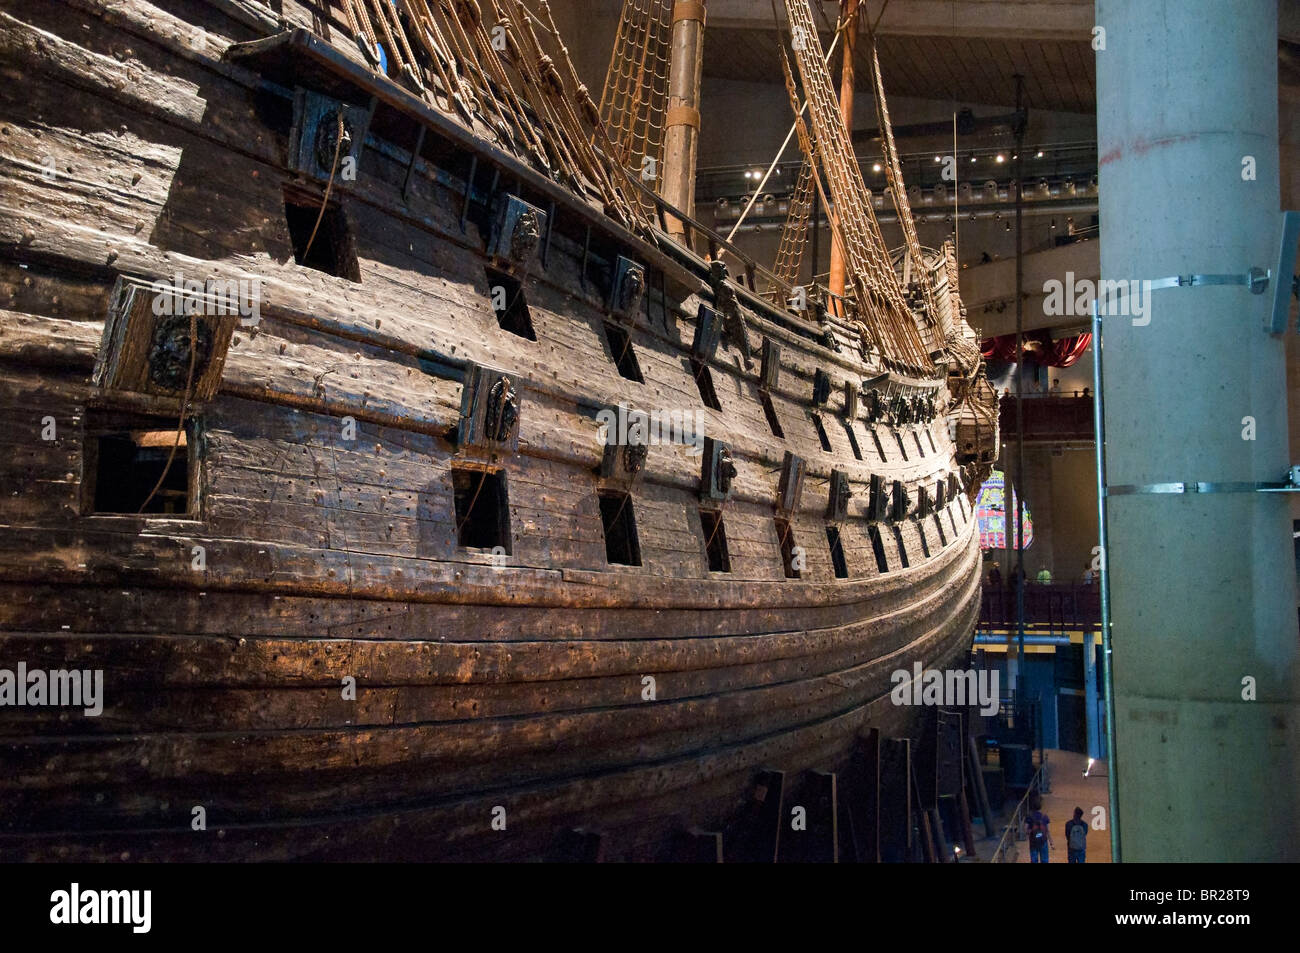 Le navire de guerre suédois Vasa dans le musée Vasa (Vasamuseet) à Stockholm, en Suède. Banque D'Images